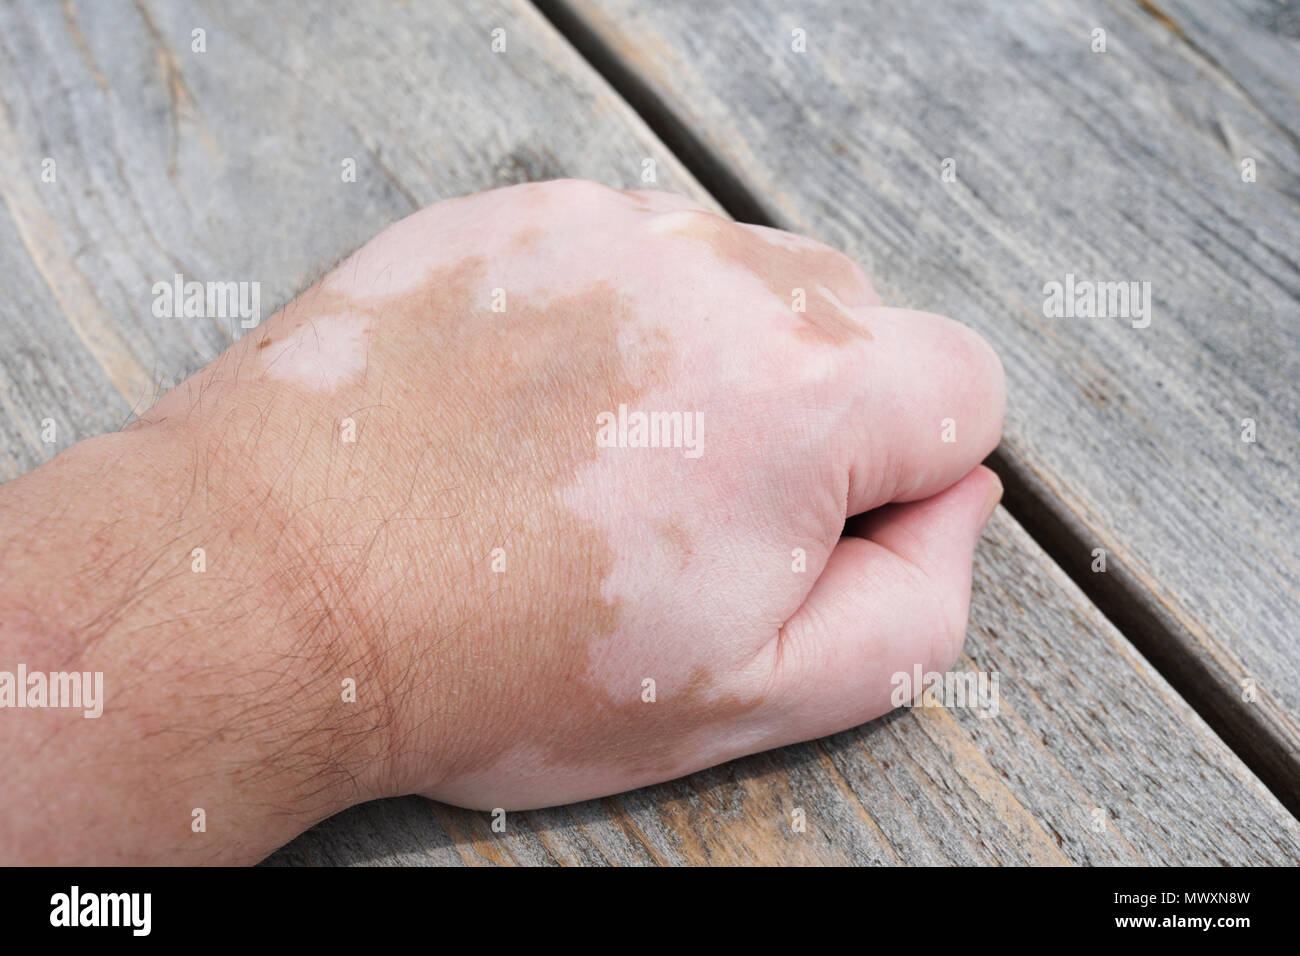 La main des hommes avec le vitiligo état de peau, caractérisée par des taches blanches ou des correctifs non pigmentée Banque D'Images